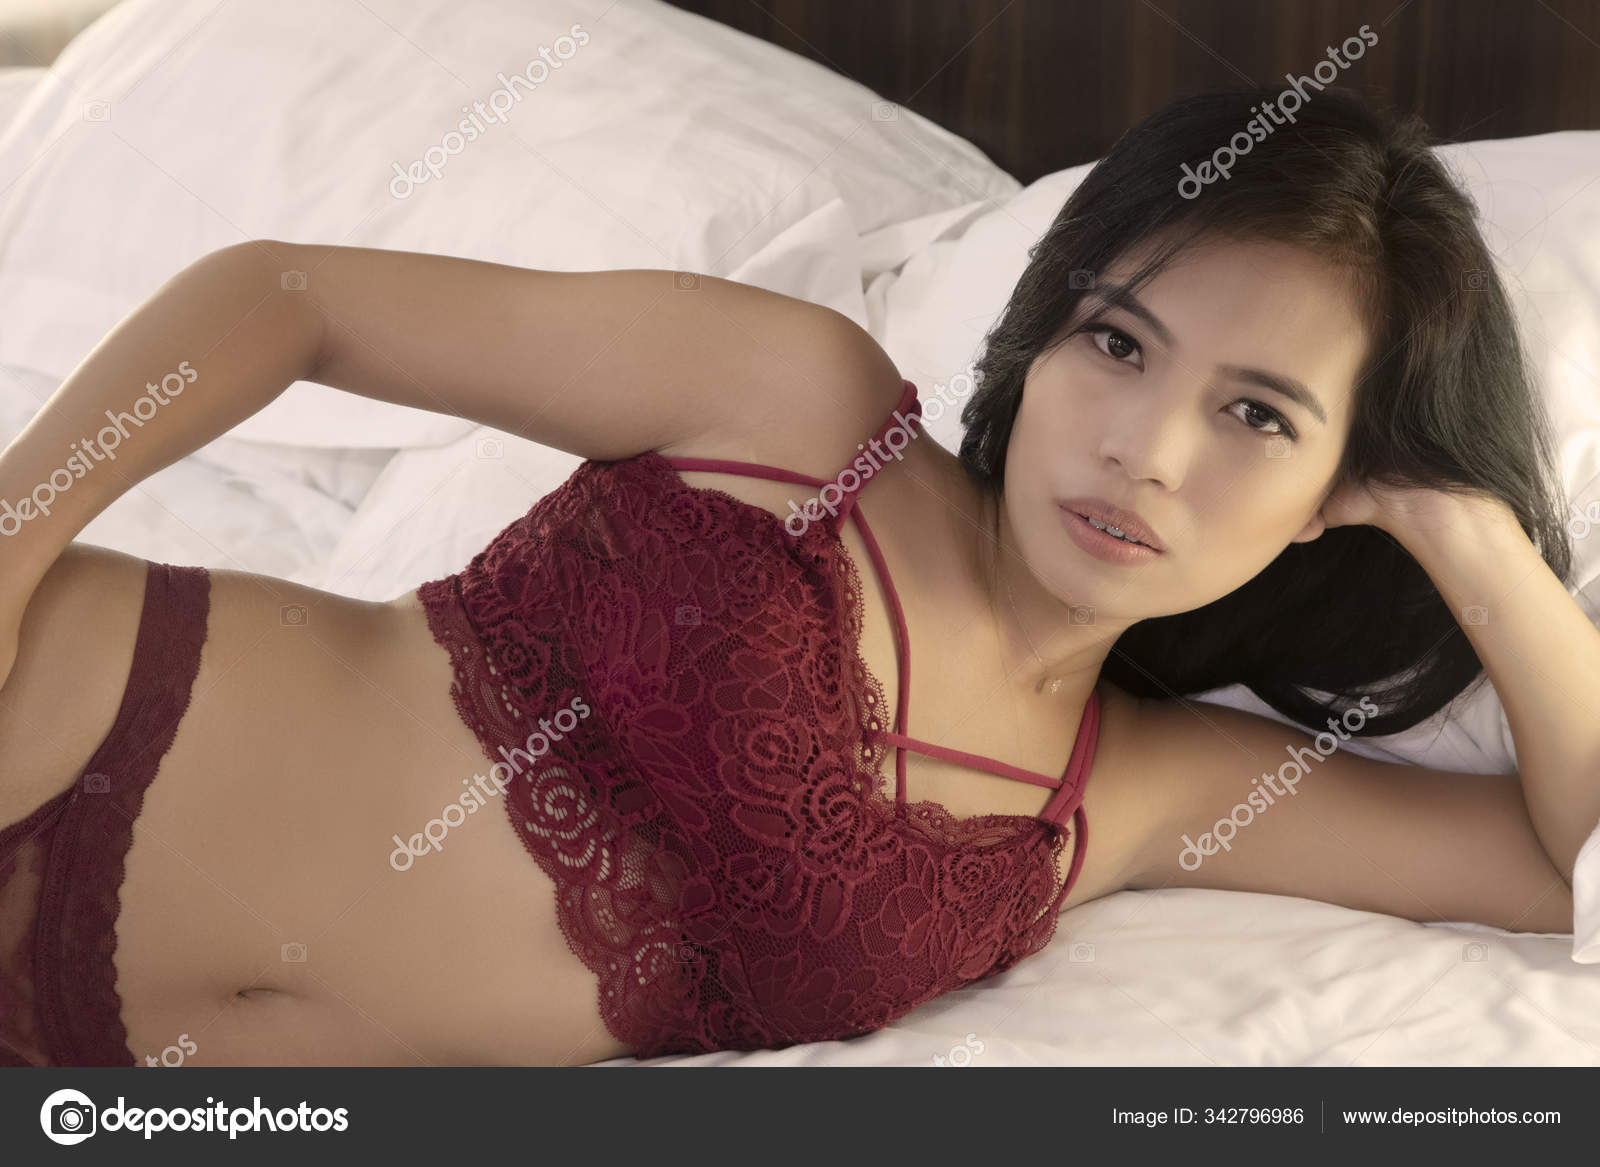 Nude Beautiful Asian Women